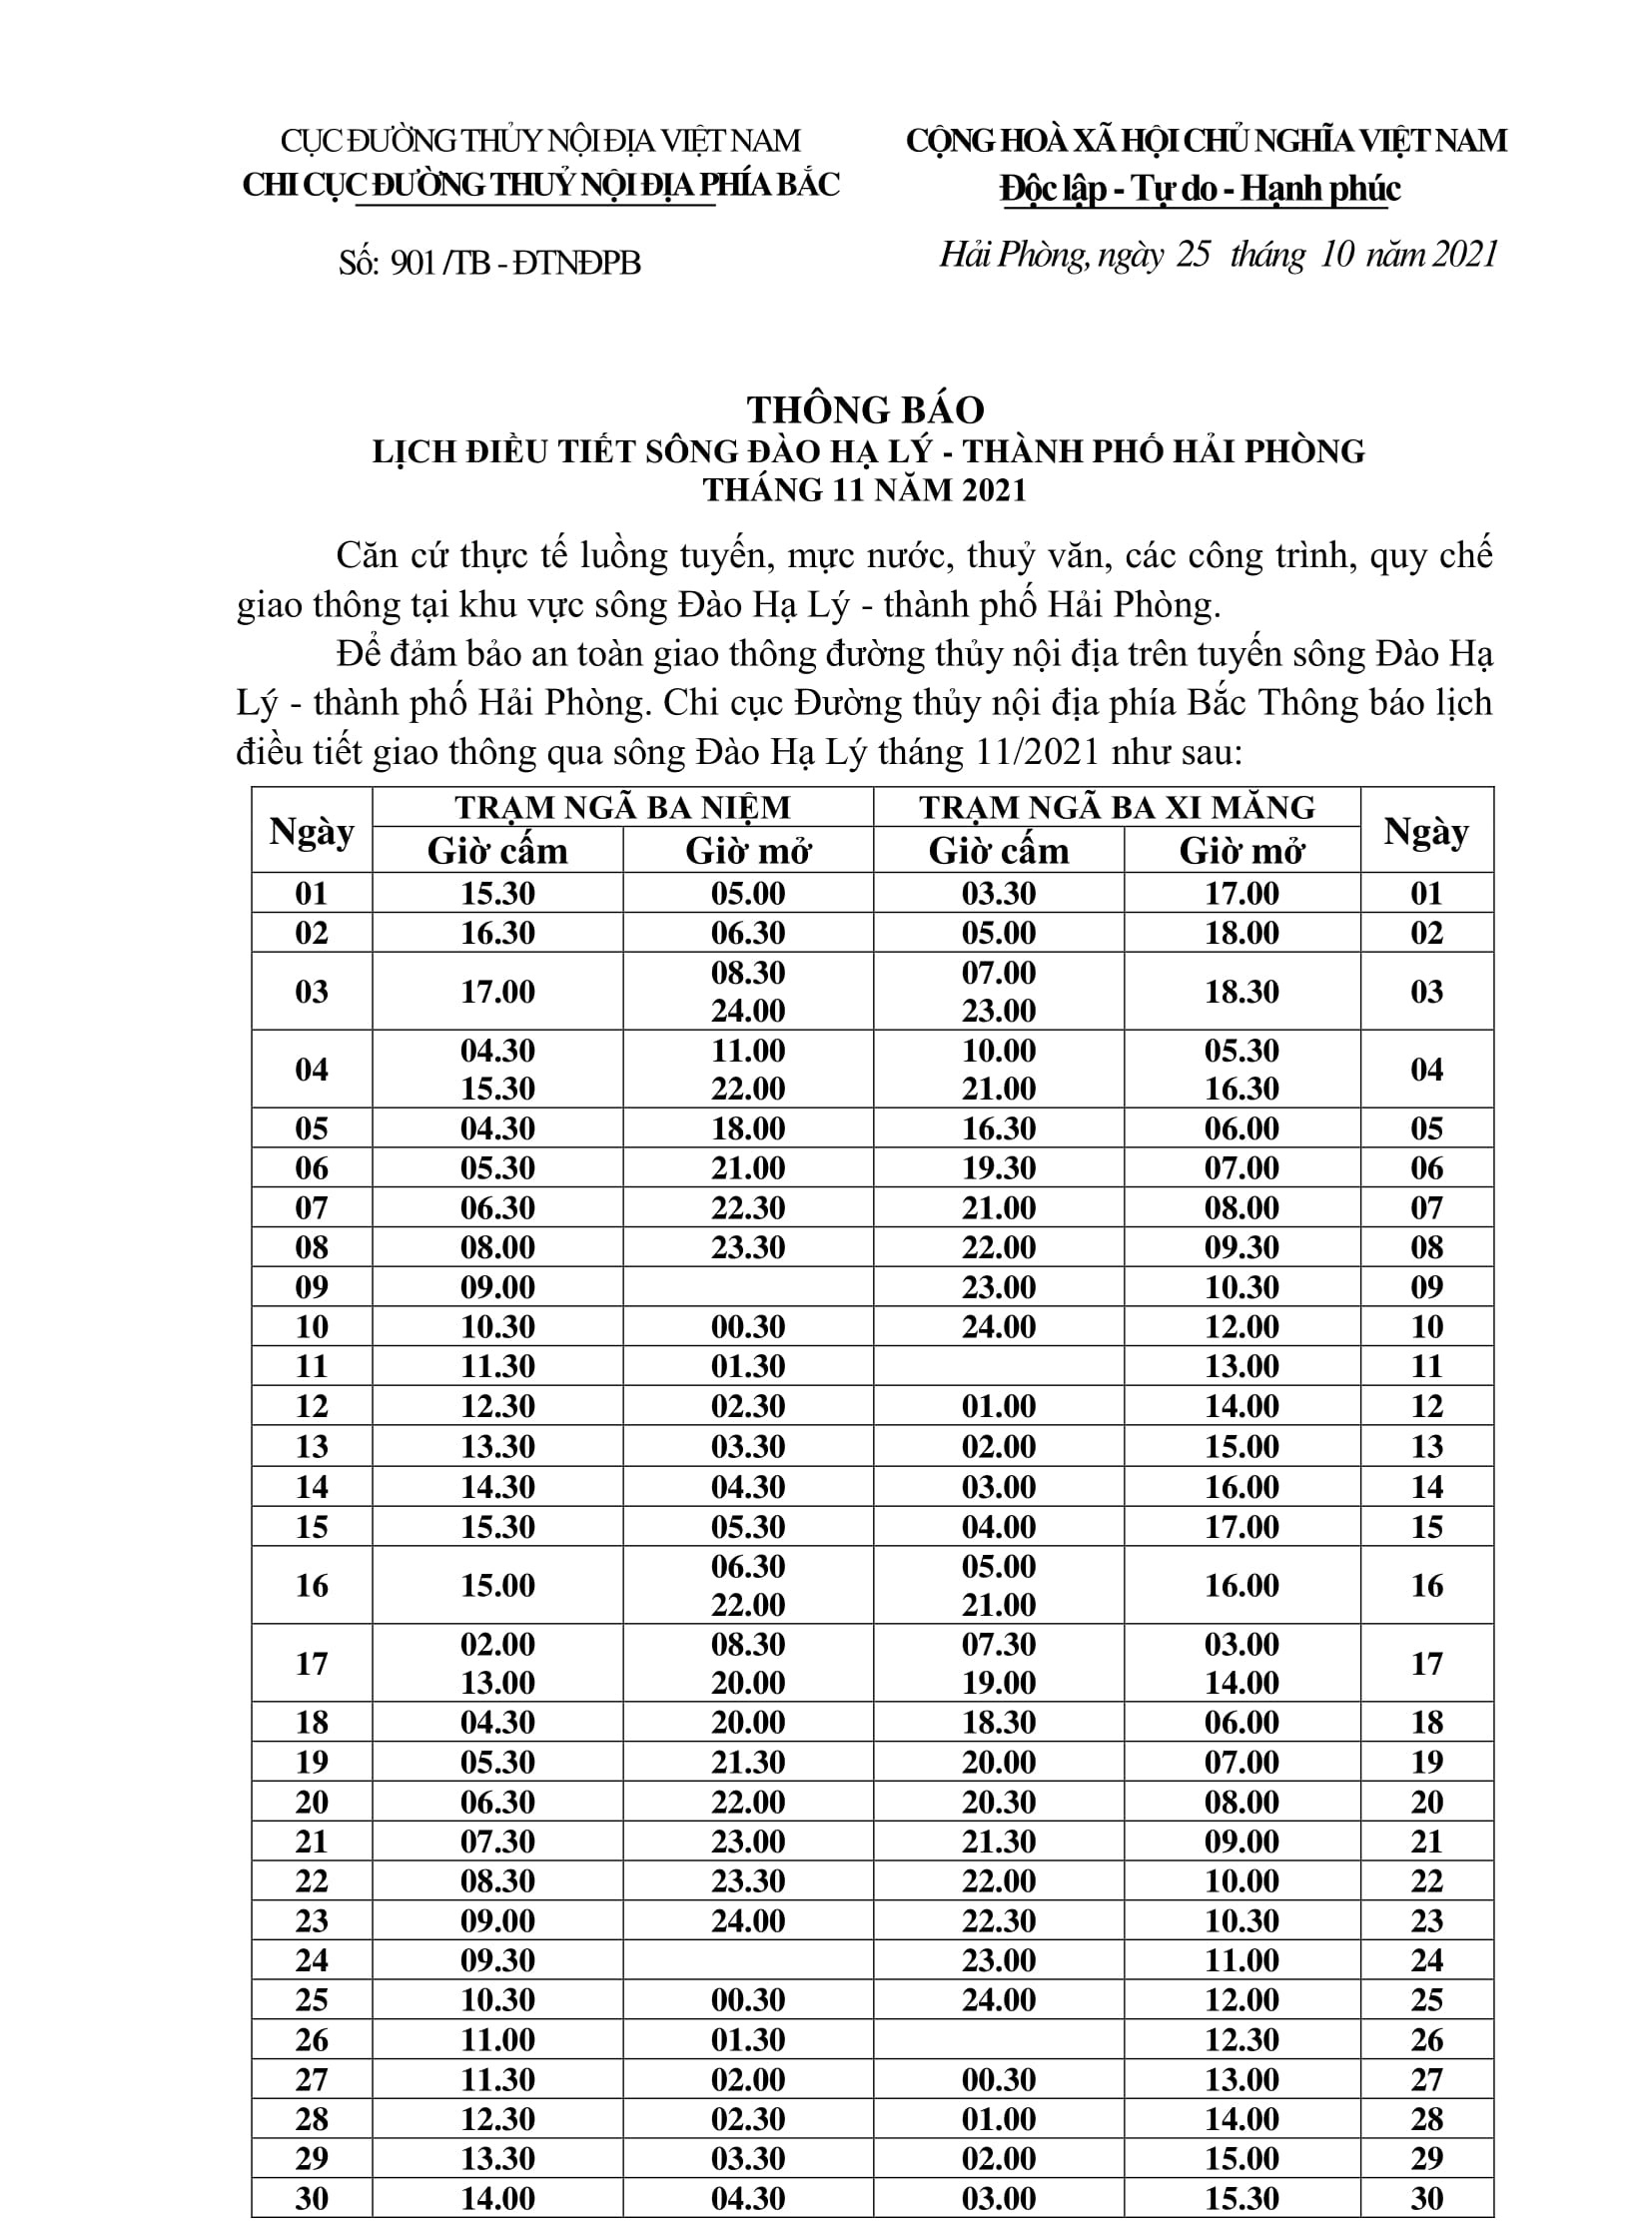 Thông báo điều chỉnh lịch điều tiết sông Đào Hạ Lý - TP Hải Phòng tháng 11/2021